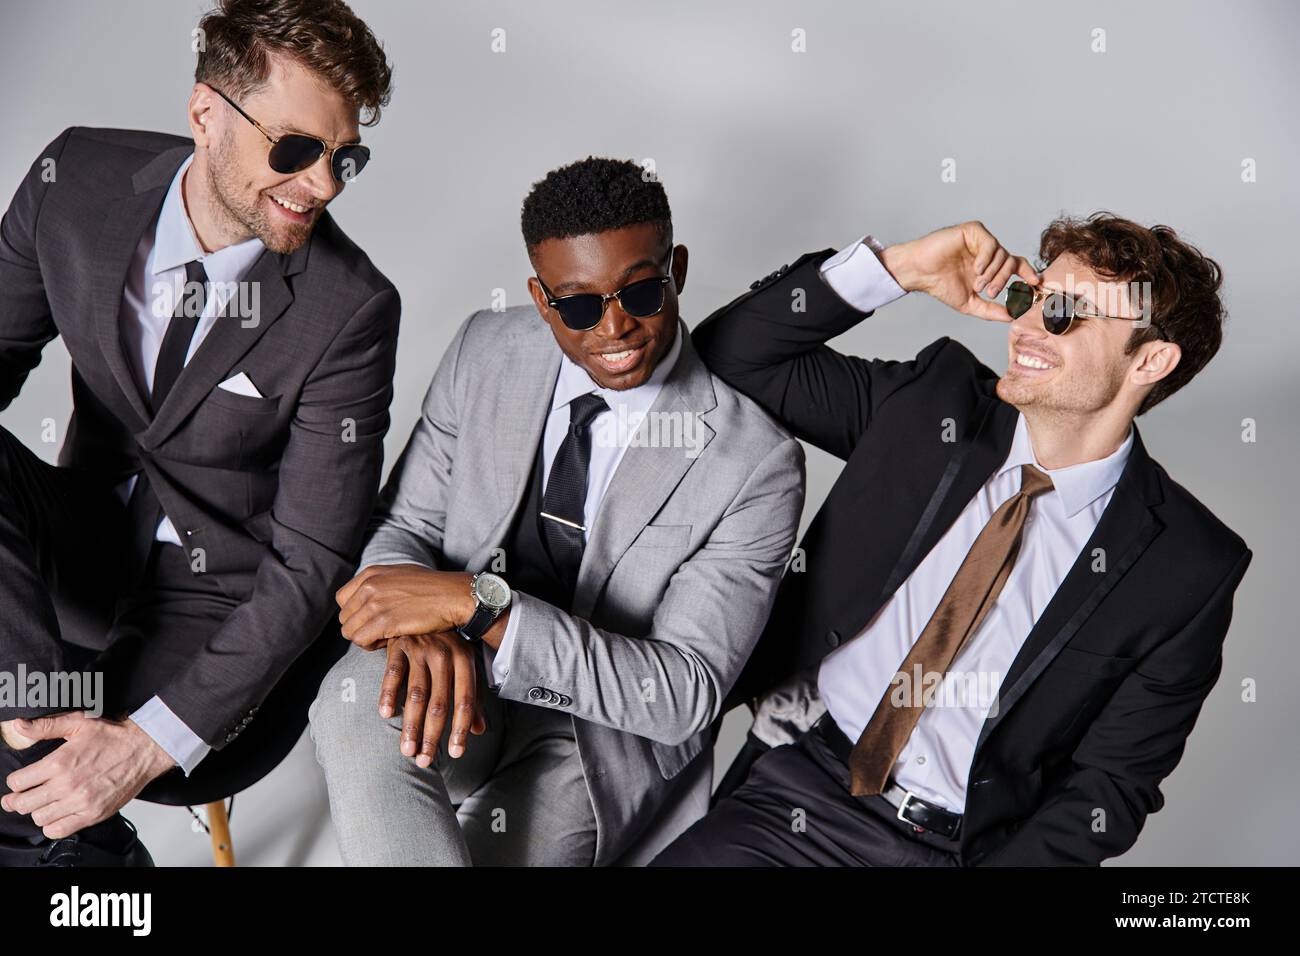 Fröhliche attraktive multikulturelle Männer in Business-Anzügen sitzen auf Stühlen und lächeln fröhlich Stockfoto